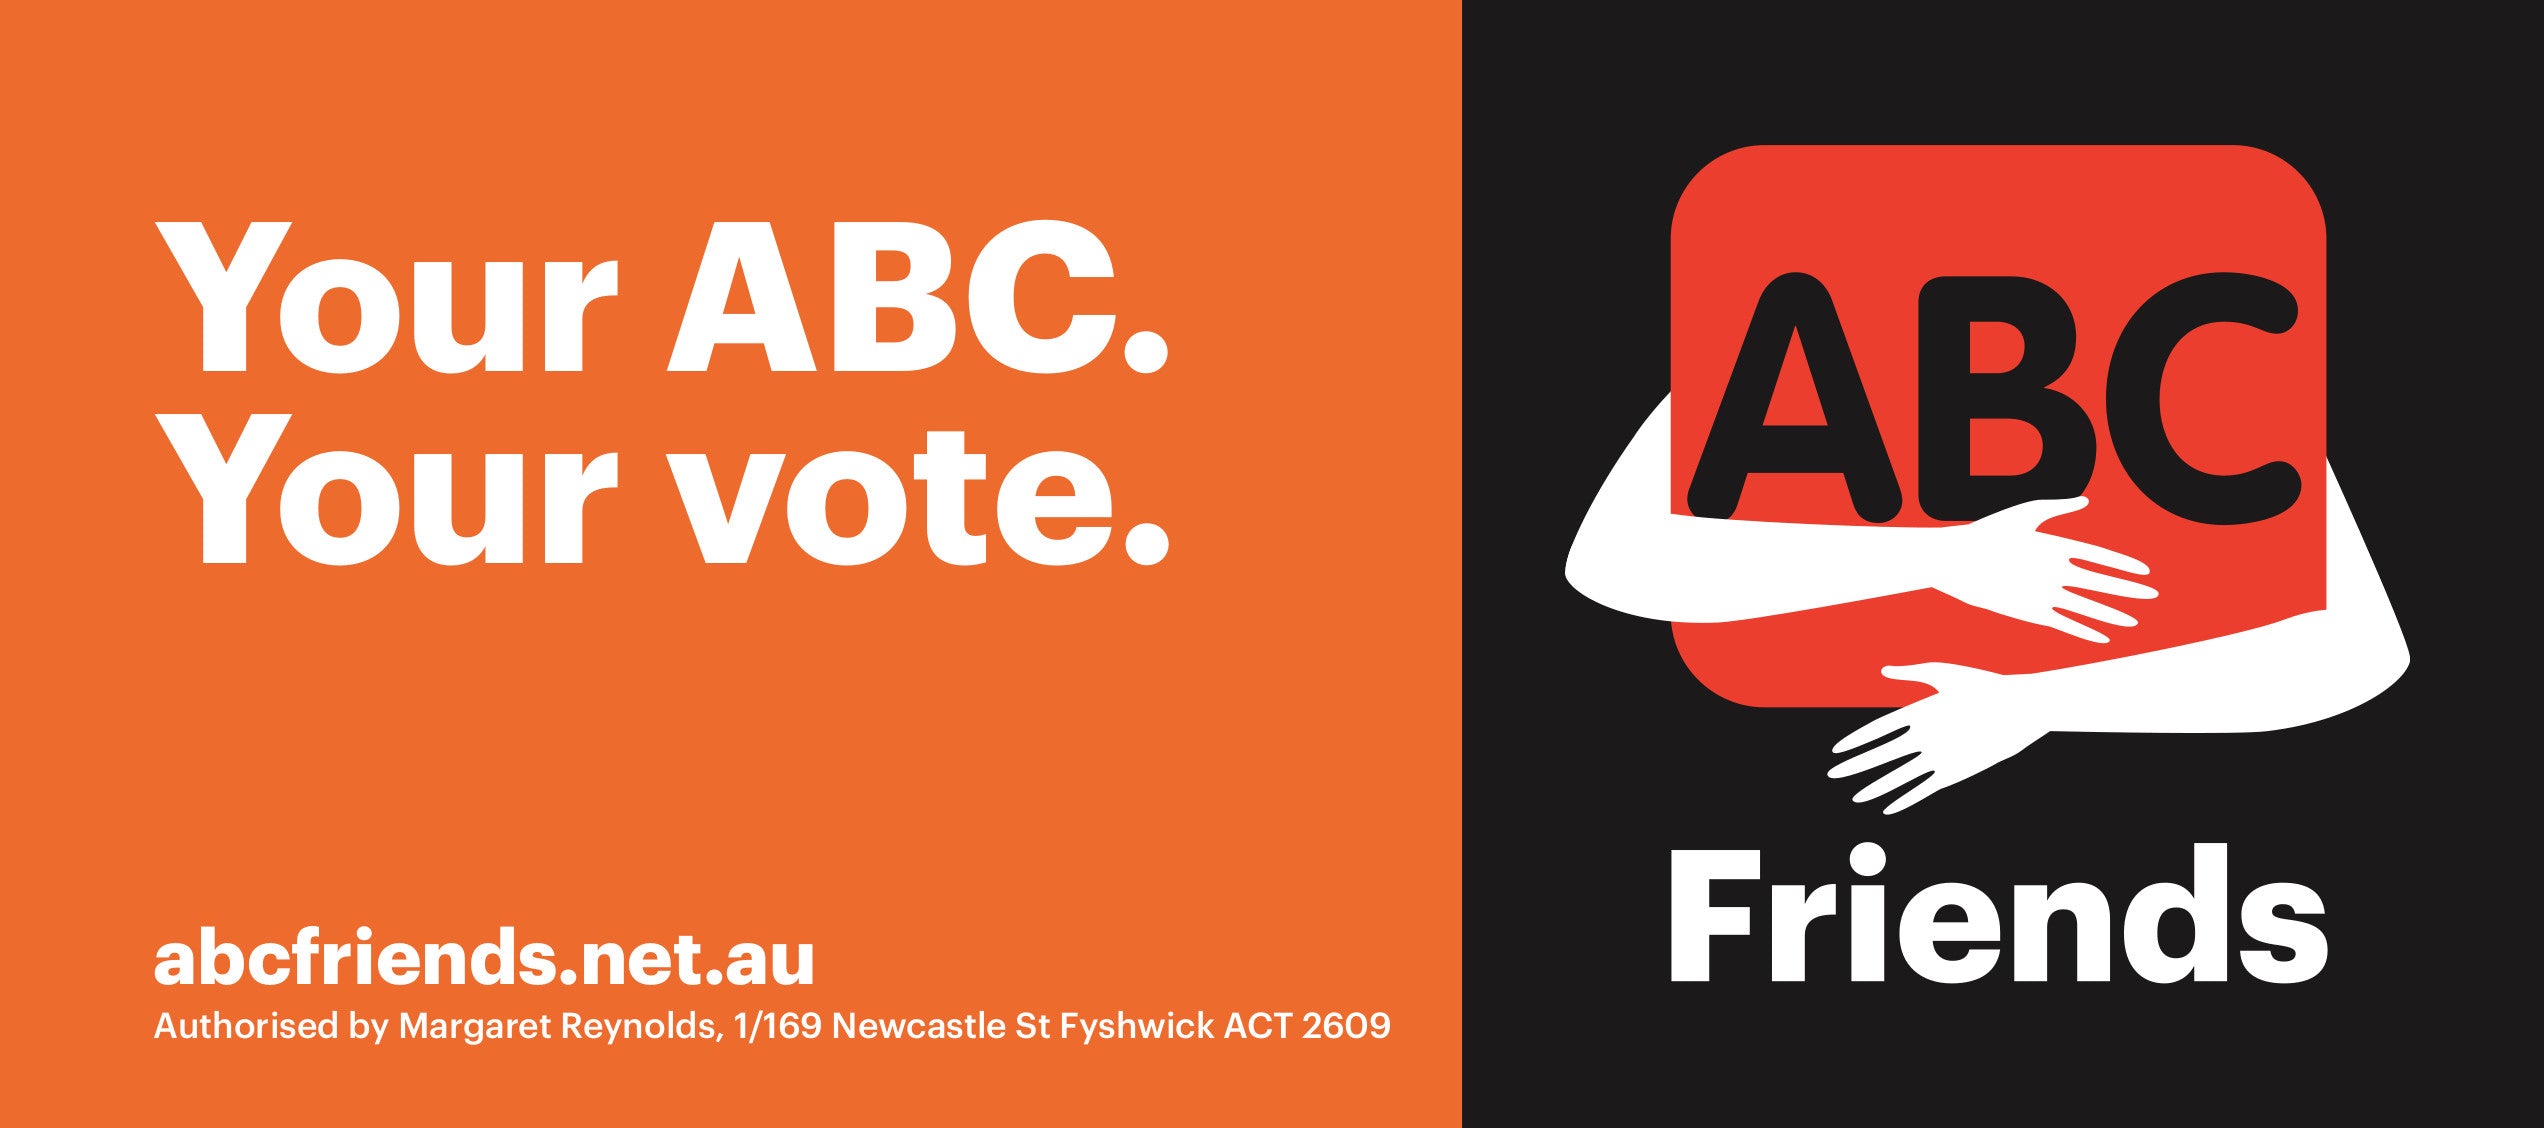 Bumper sticker: Your ABC. Your vote.